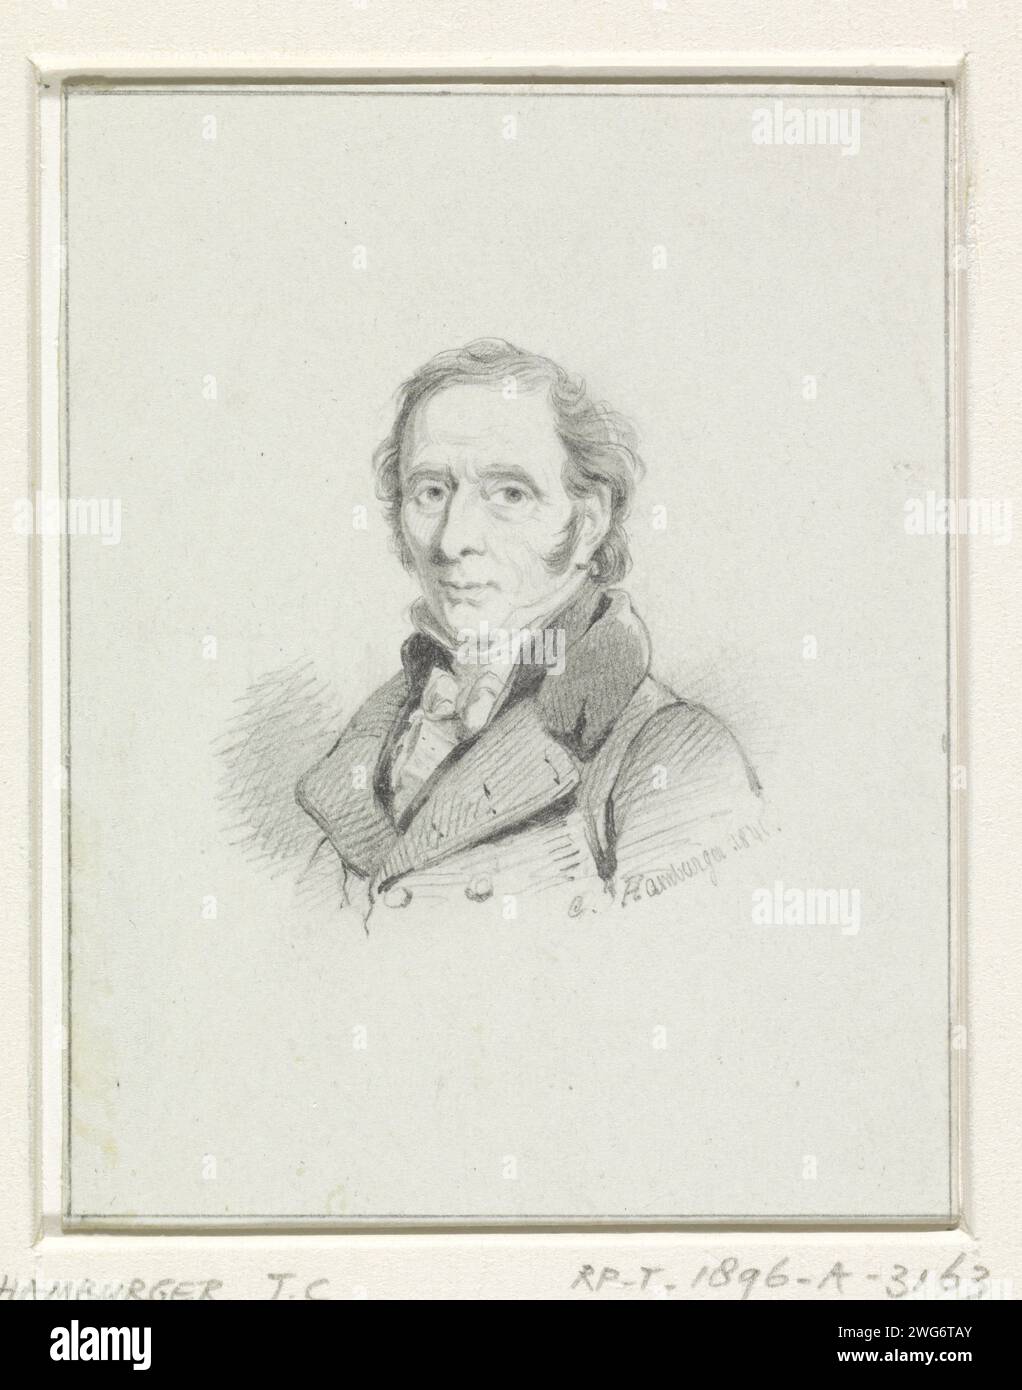 Portrait d'Adriaan de Lelie, Coenraad Hamburger, 1846 papier à dessin. portrait au crayon, autoportrait de l'artiste. portrait, autoportrait de peintre. personnages historiques Banque D'Images